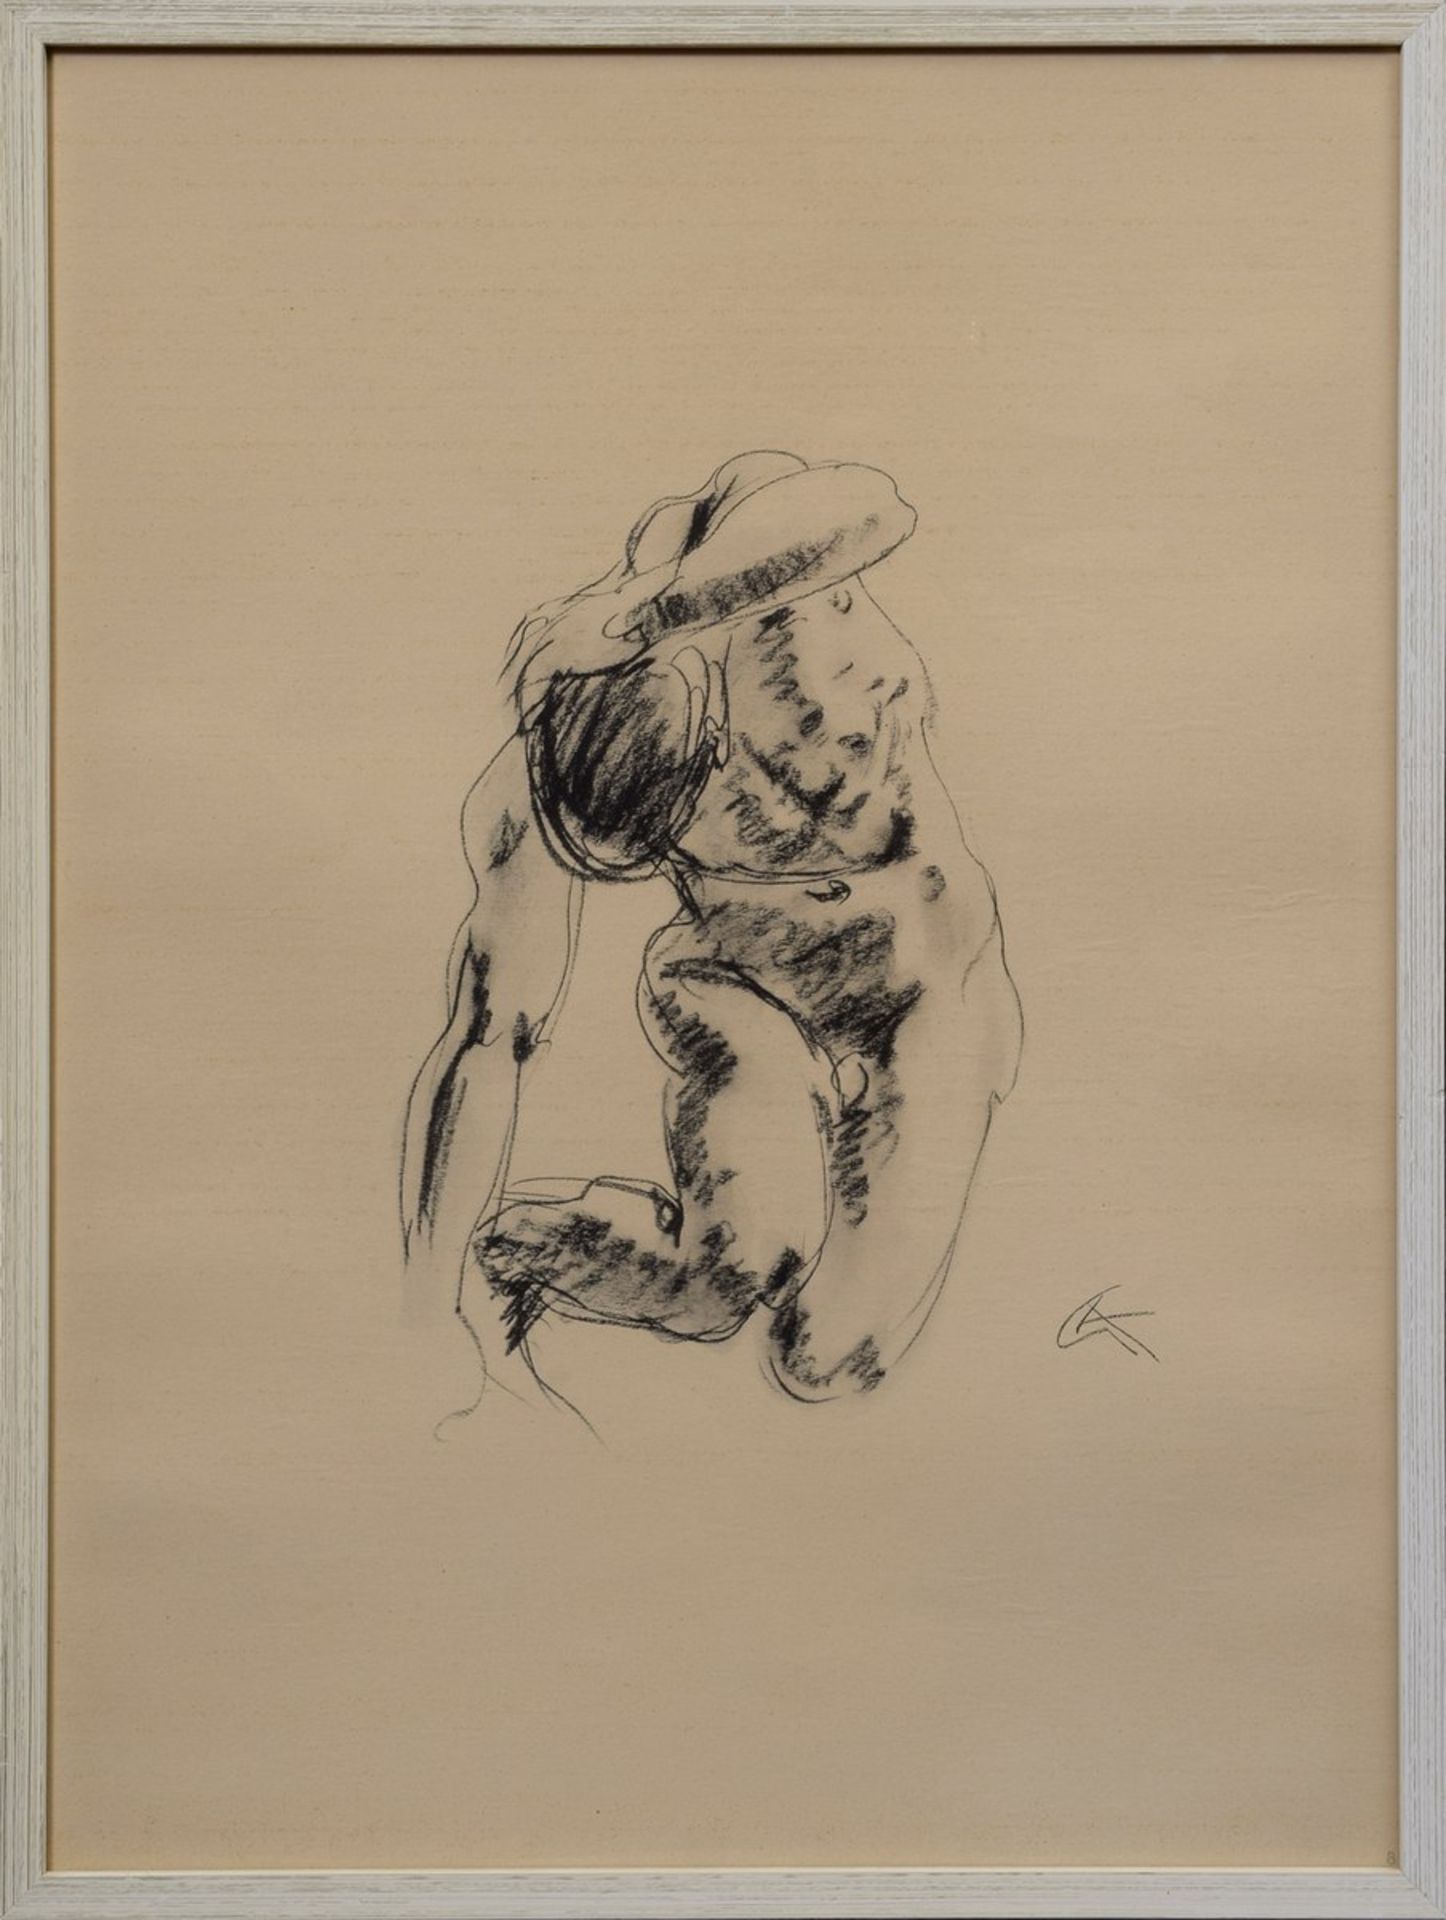 3 Diverse Kolbe, Georg (1877-1947) "Akte, tordierte Körper“, Lithographien von Kohlezeichnungen, - Bild 4 aus 4